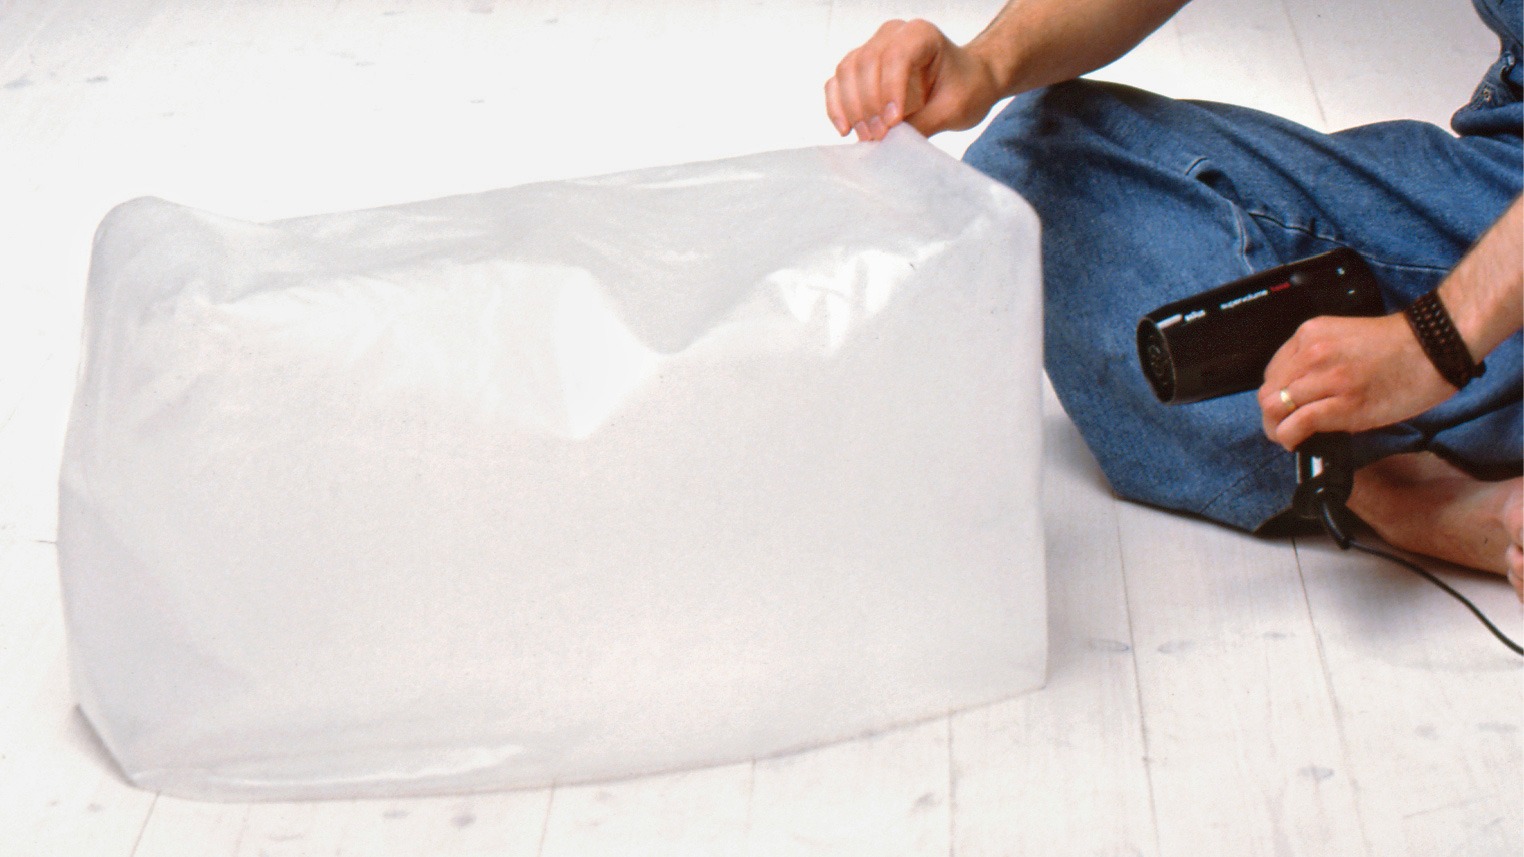 Un joven con peto, sentado en el suelo de un estudio fotográfico, hincha una almohada de plástico con un secador de mano.